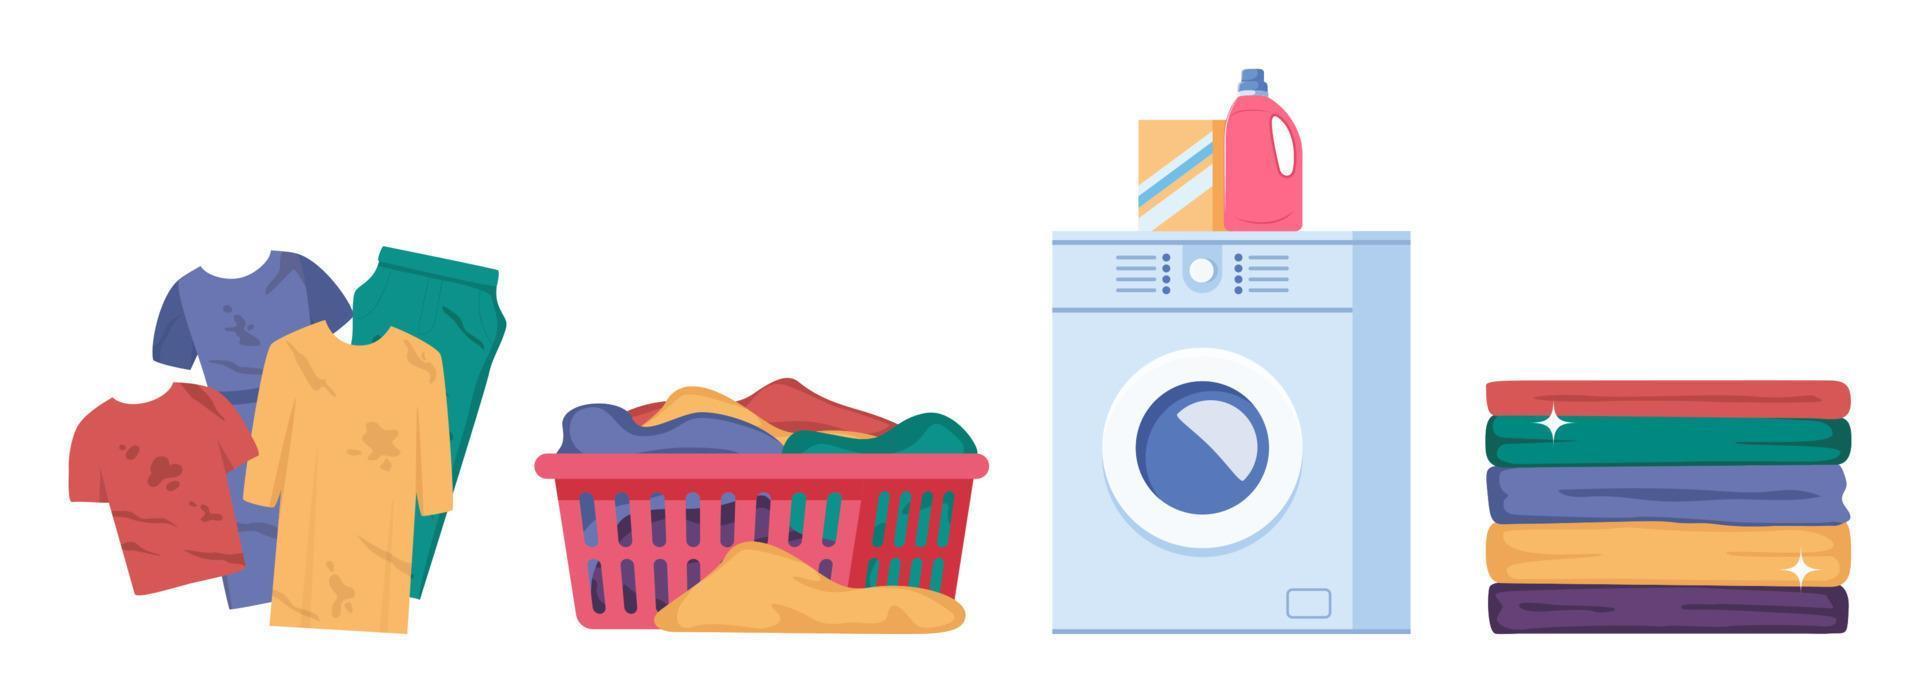 wasserij infographics met volgorde van vier verschillend stadia van het wassen werkwijze. het wassen kleren. vuil linnen, het wassen machine, stapel van schoon kleren. huishouding concept vector illustratie.